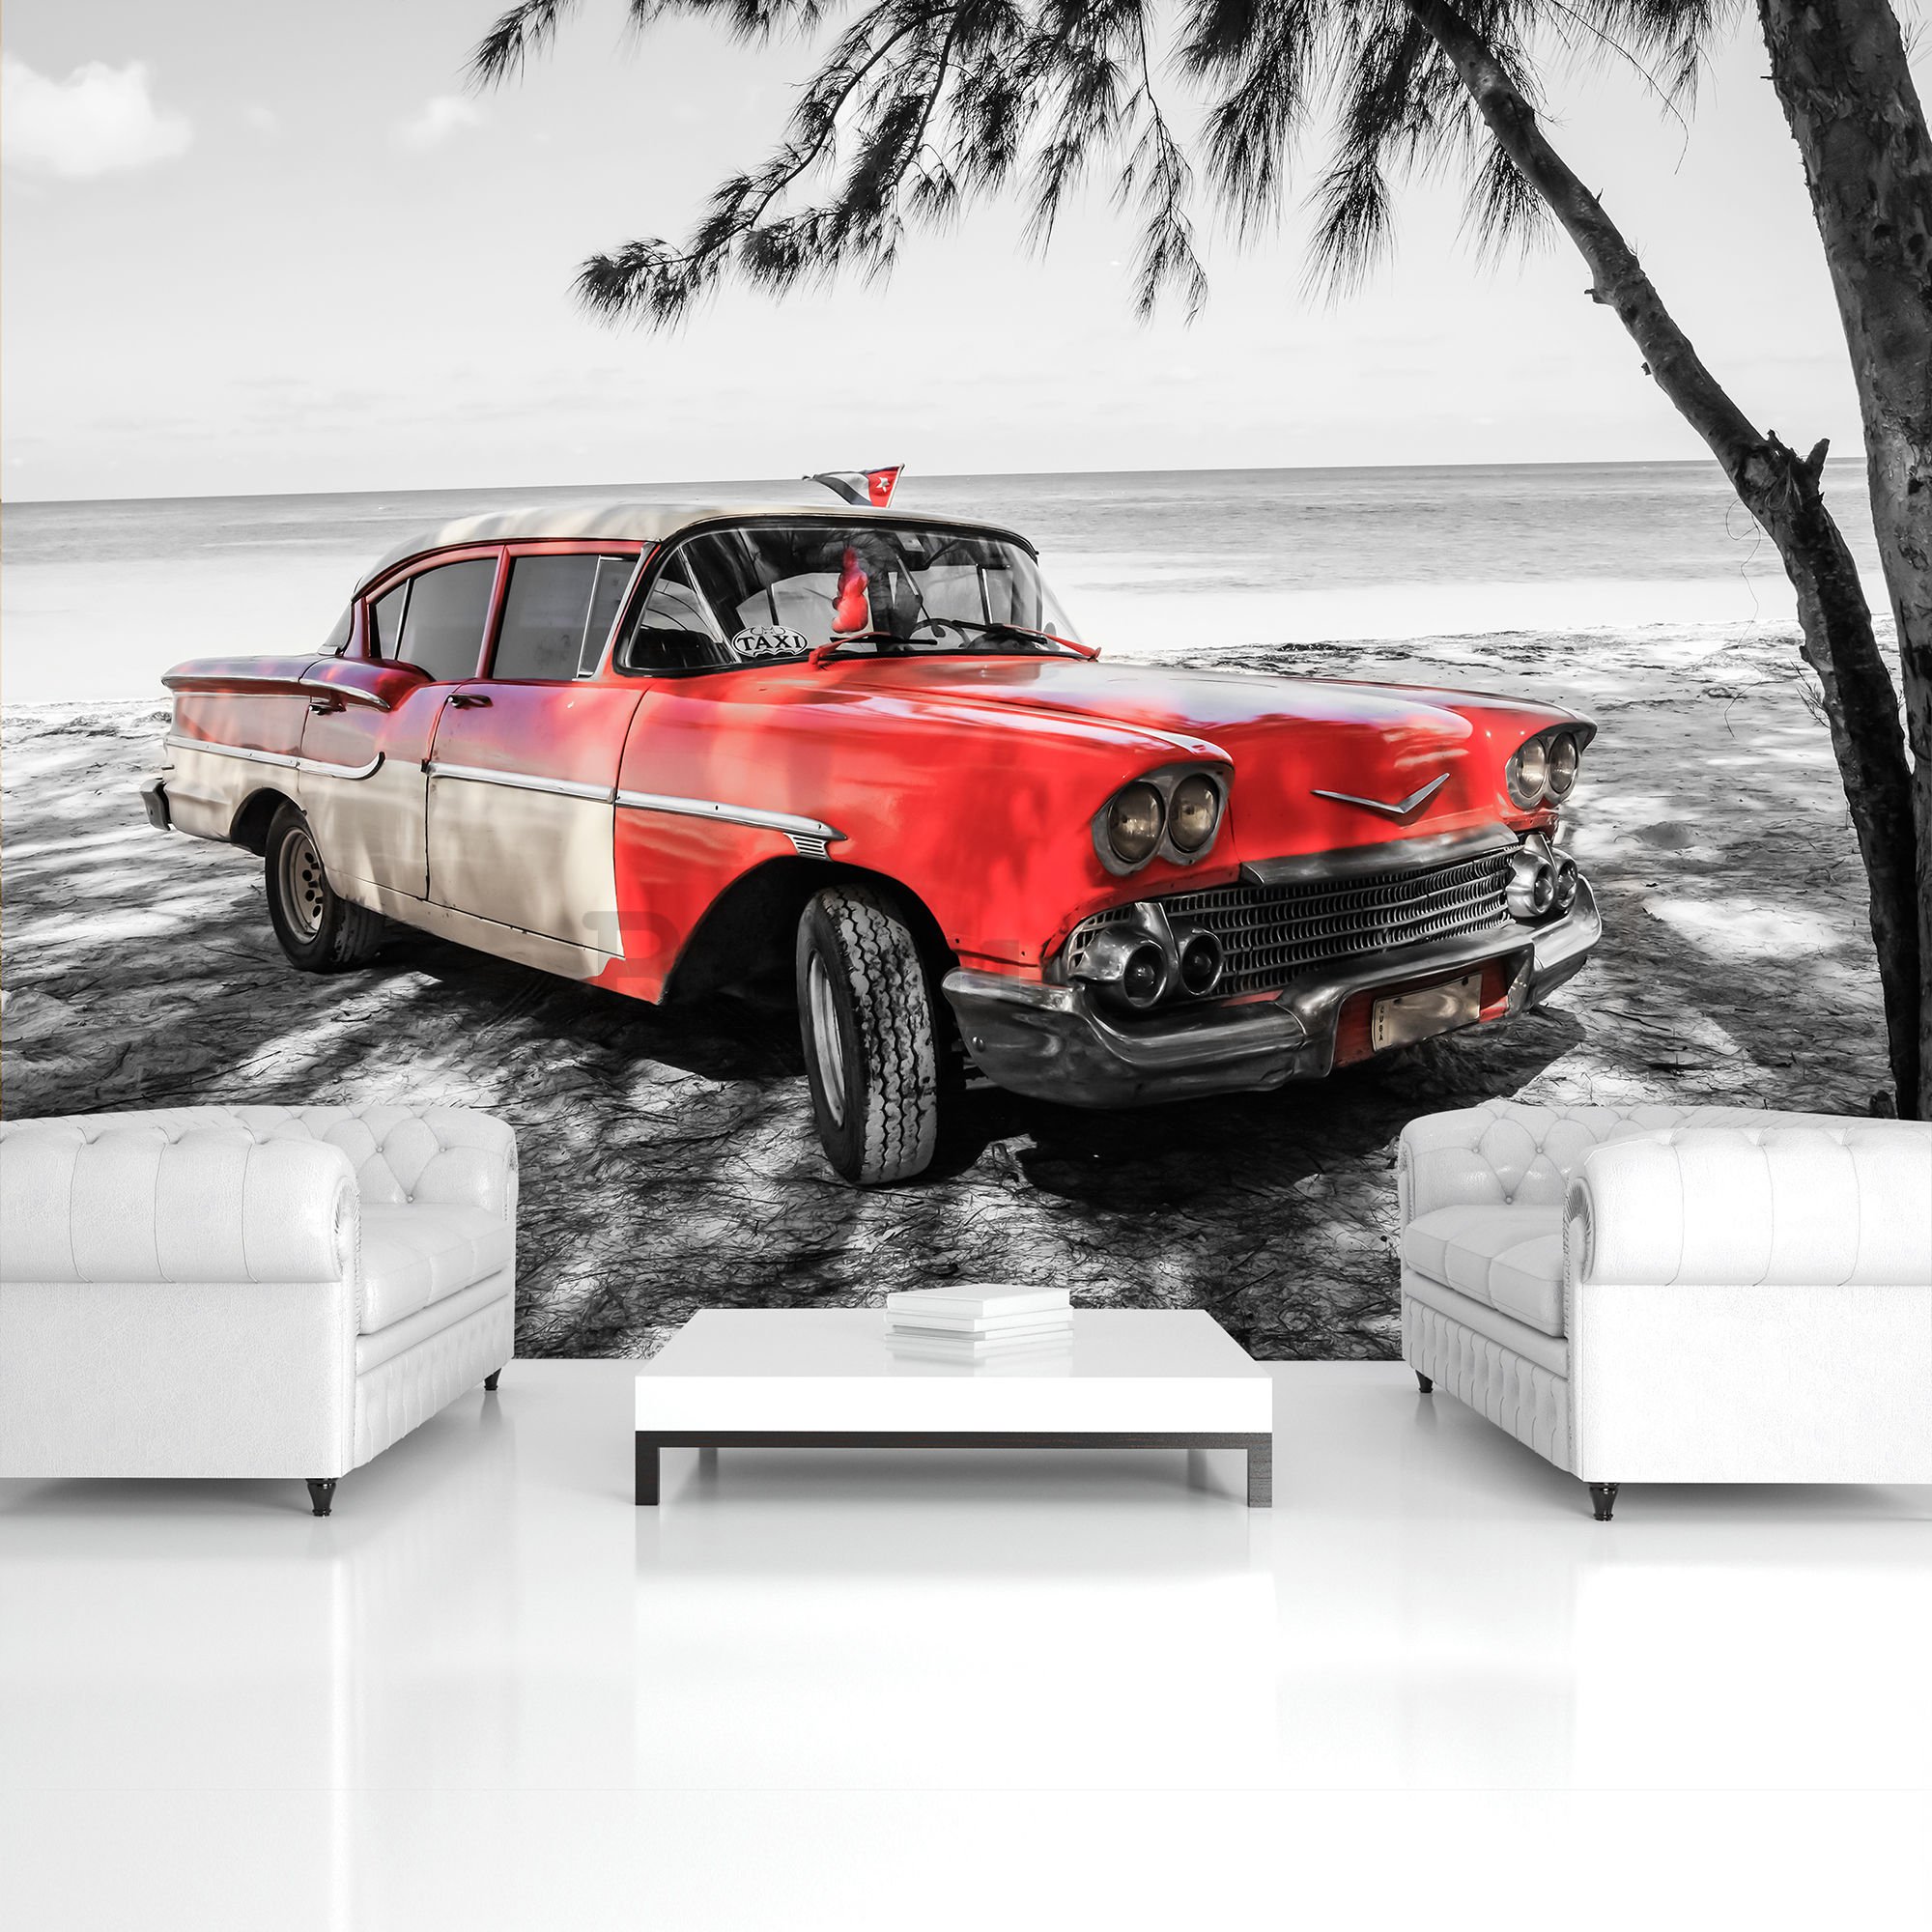 Fotomurale in TNT: Cuba auto rossa sul mare - 254x368 cm